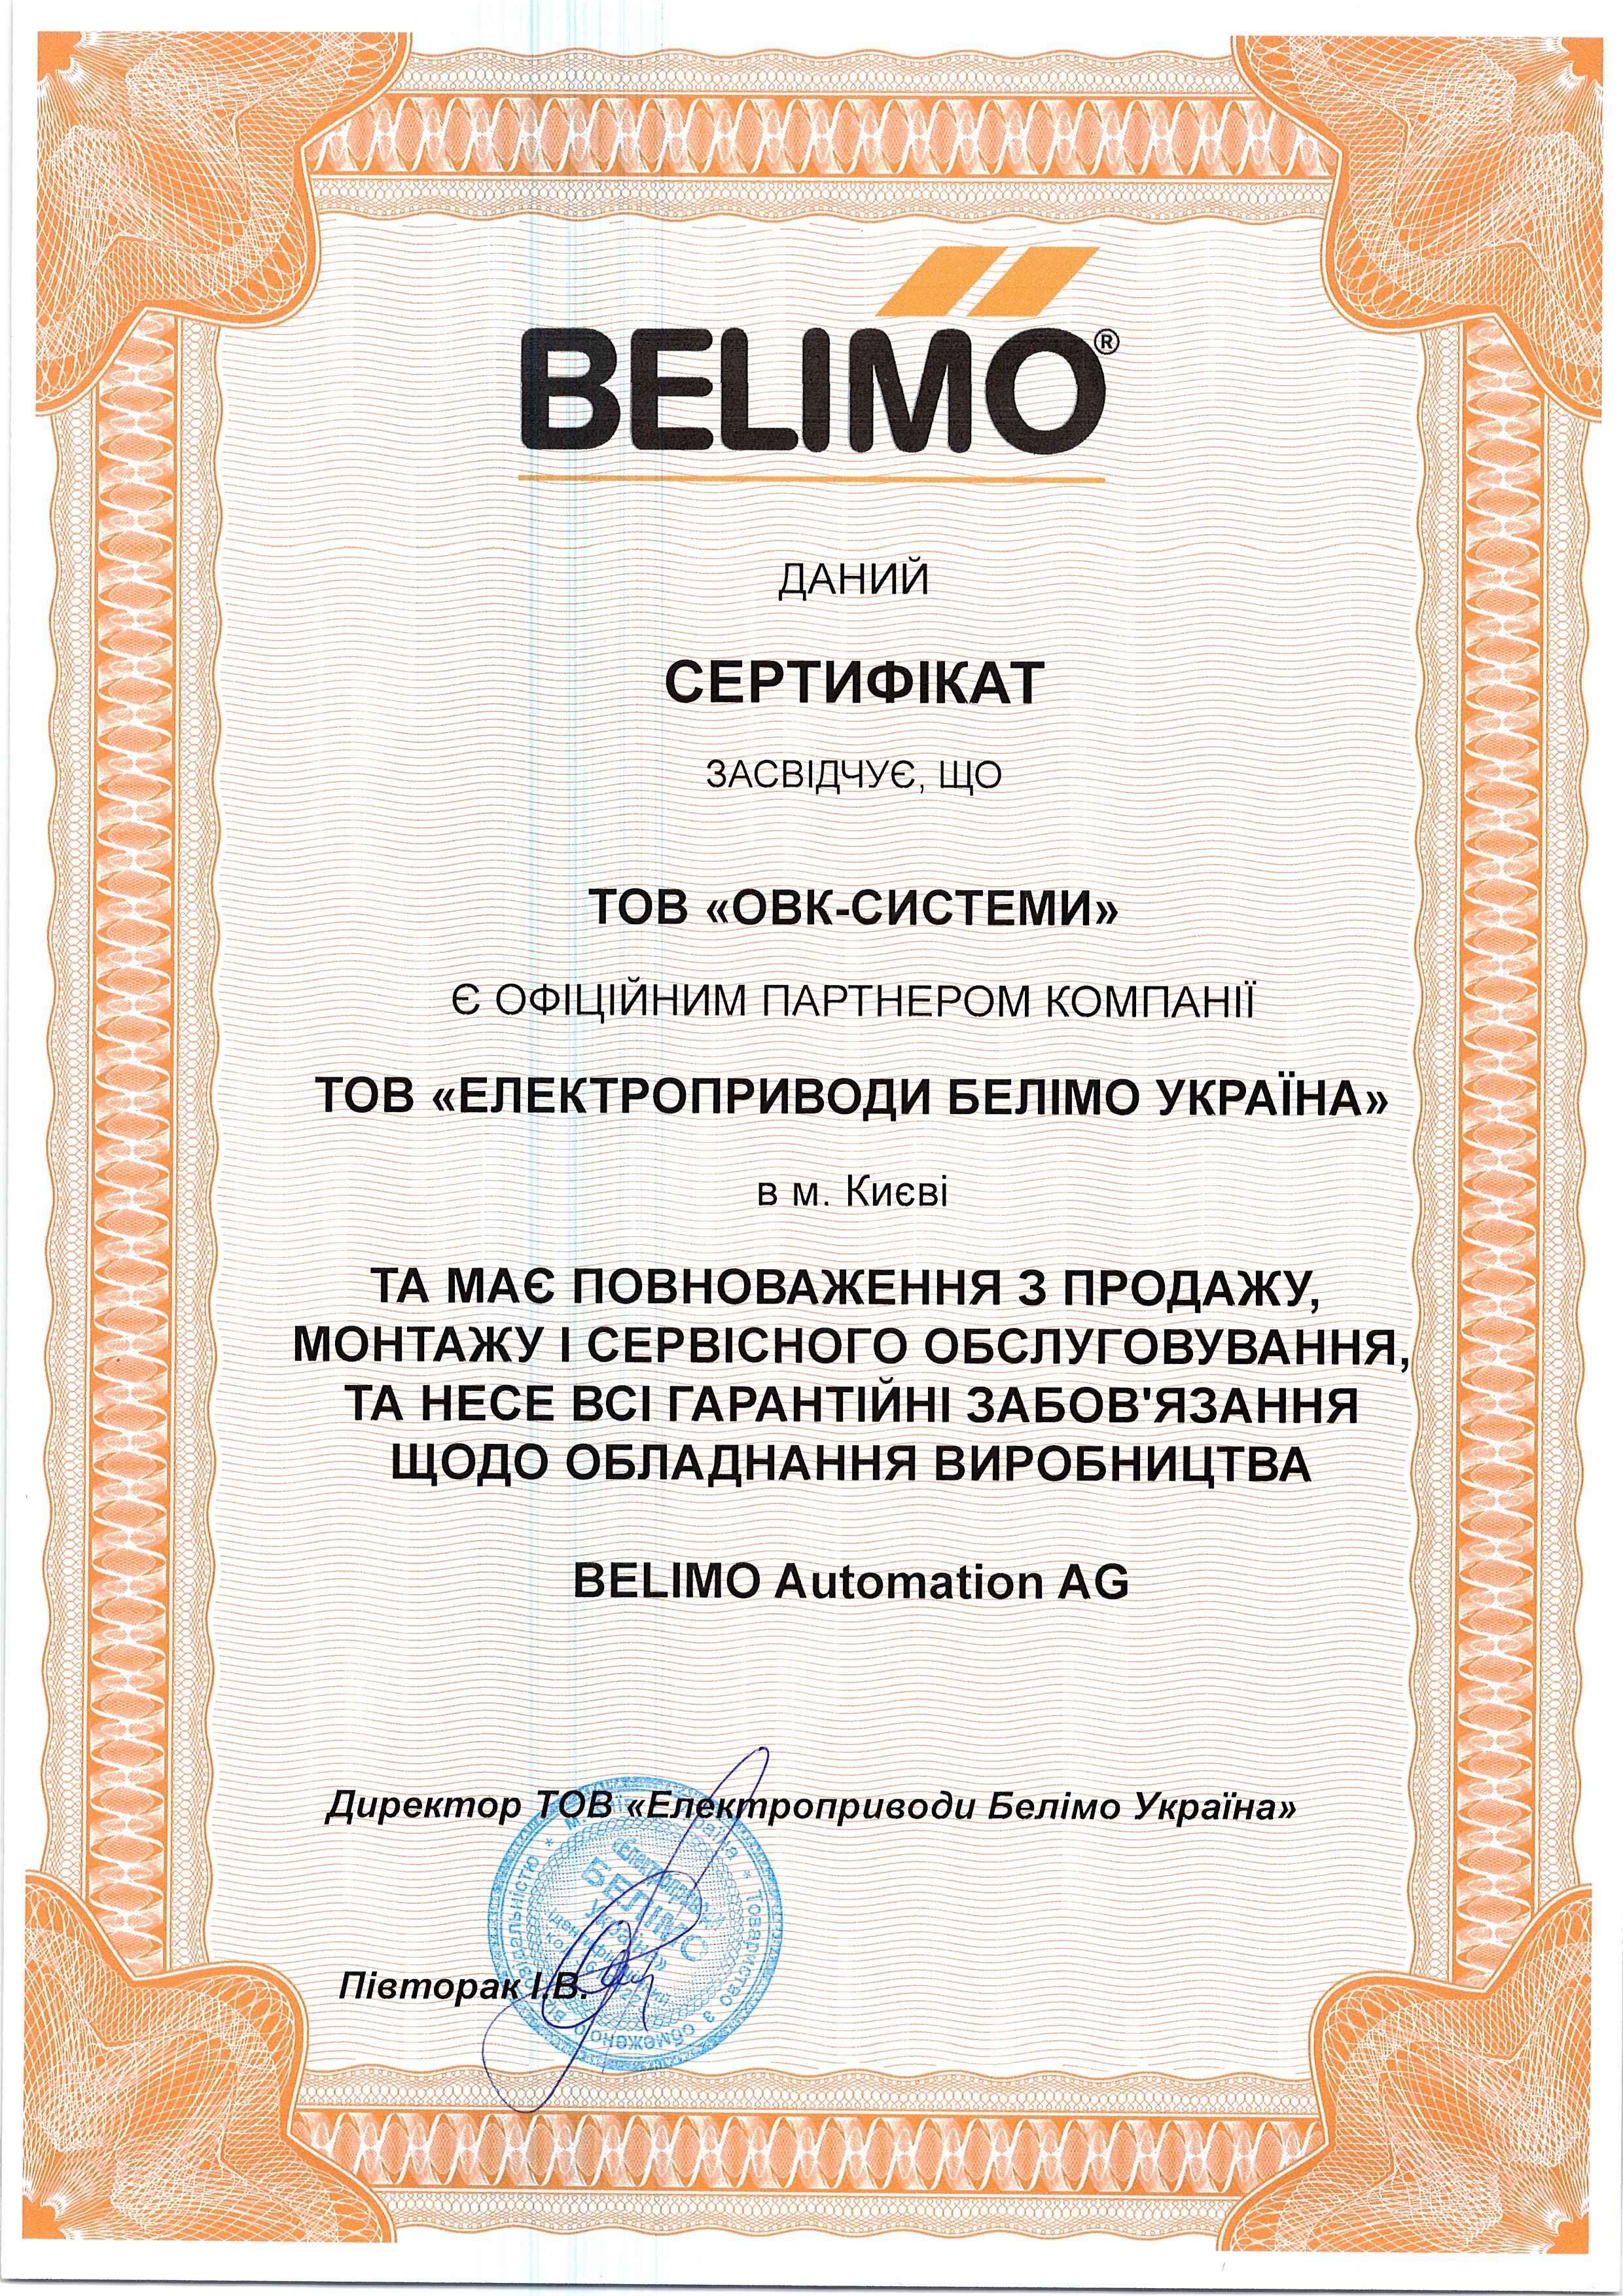 Сертификат дистрибьютора Belimo